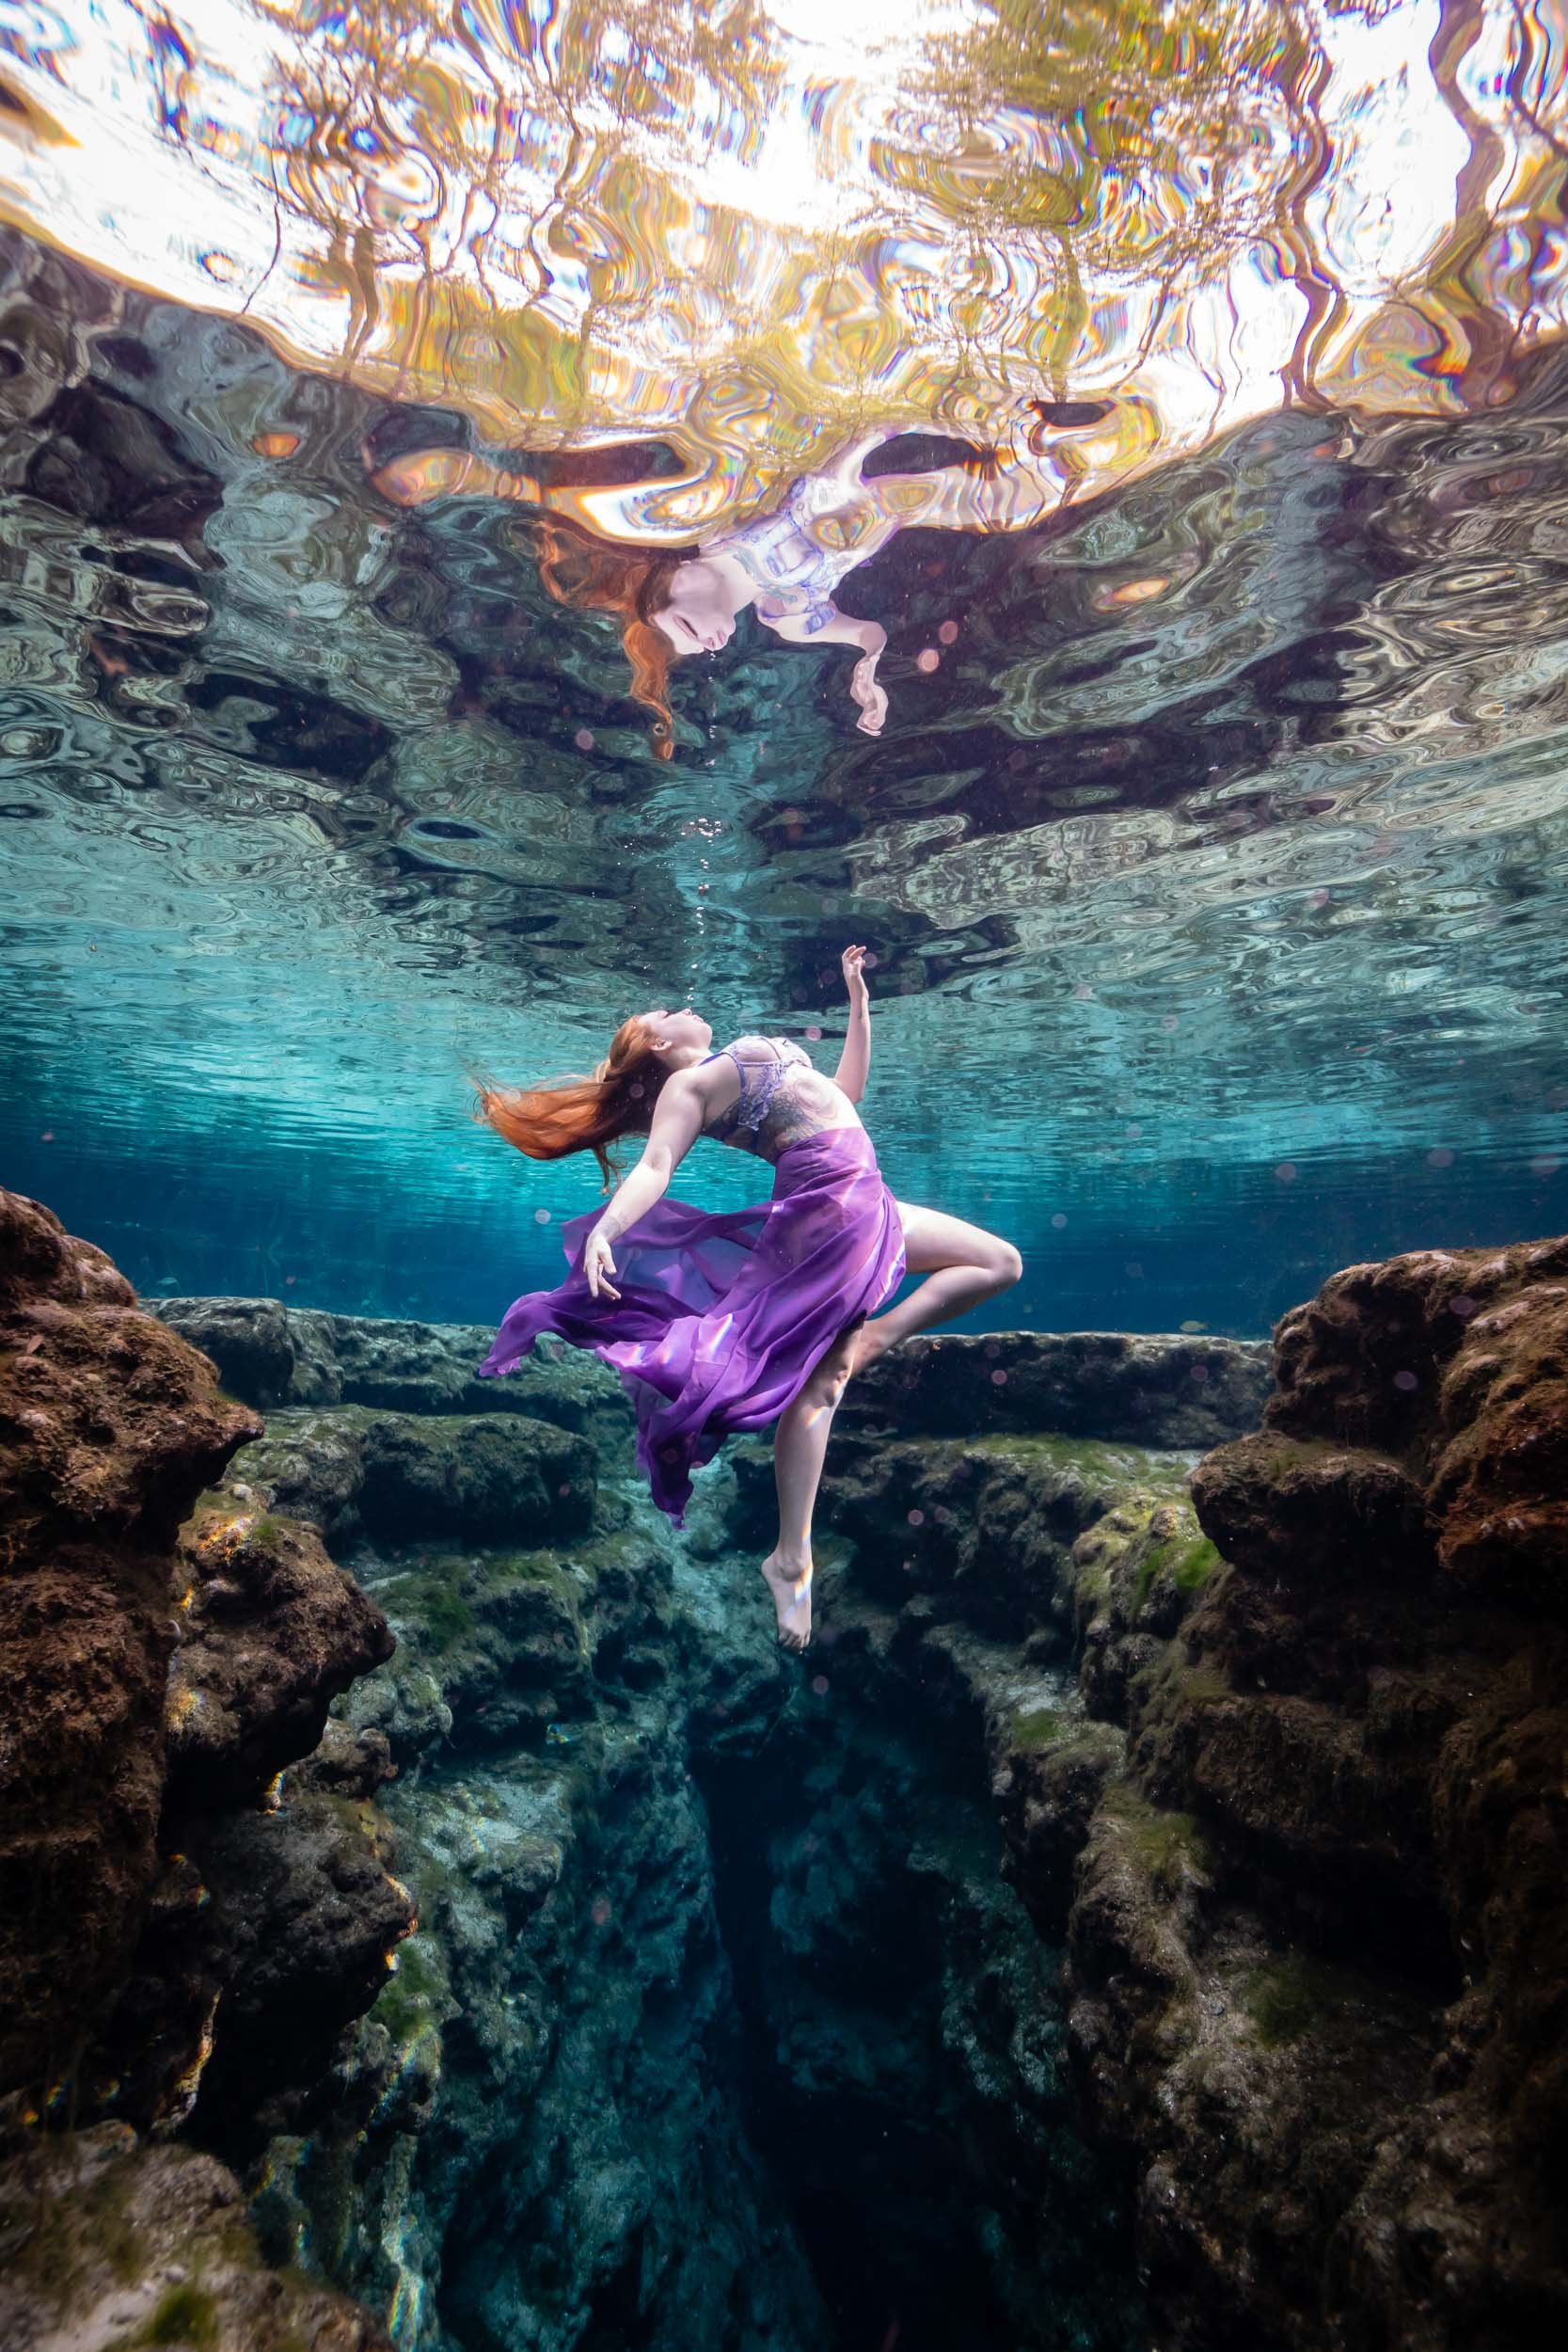 Underwater model Aimee in the springs